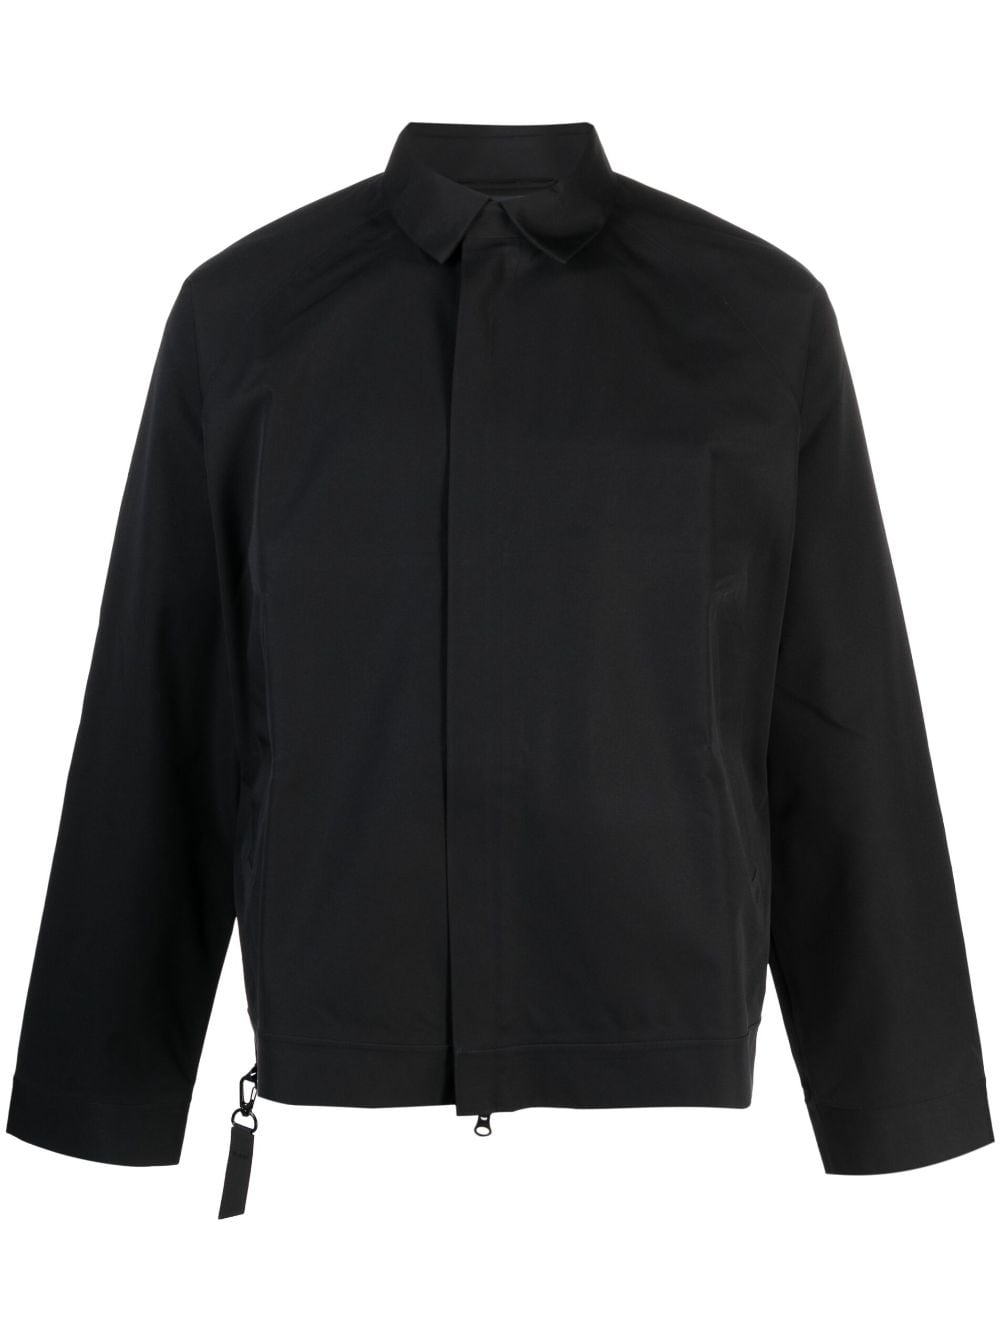 BLAEST Standal ziped shirt jacket - Black von BLAEST